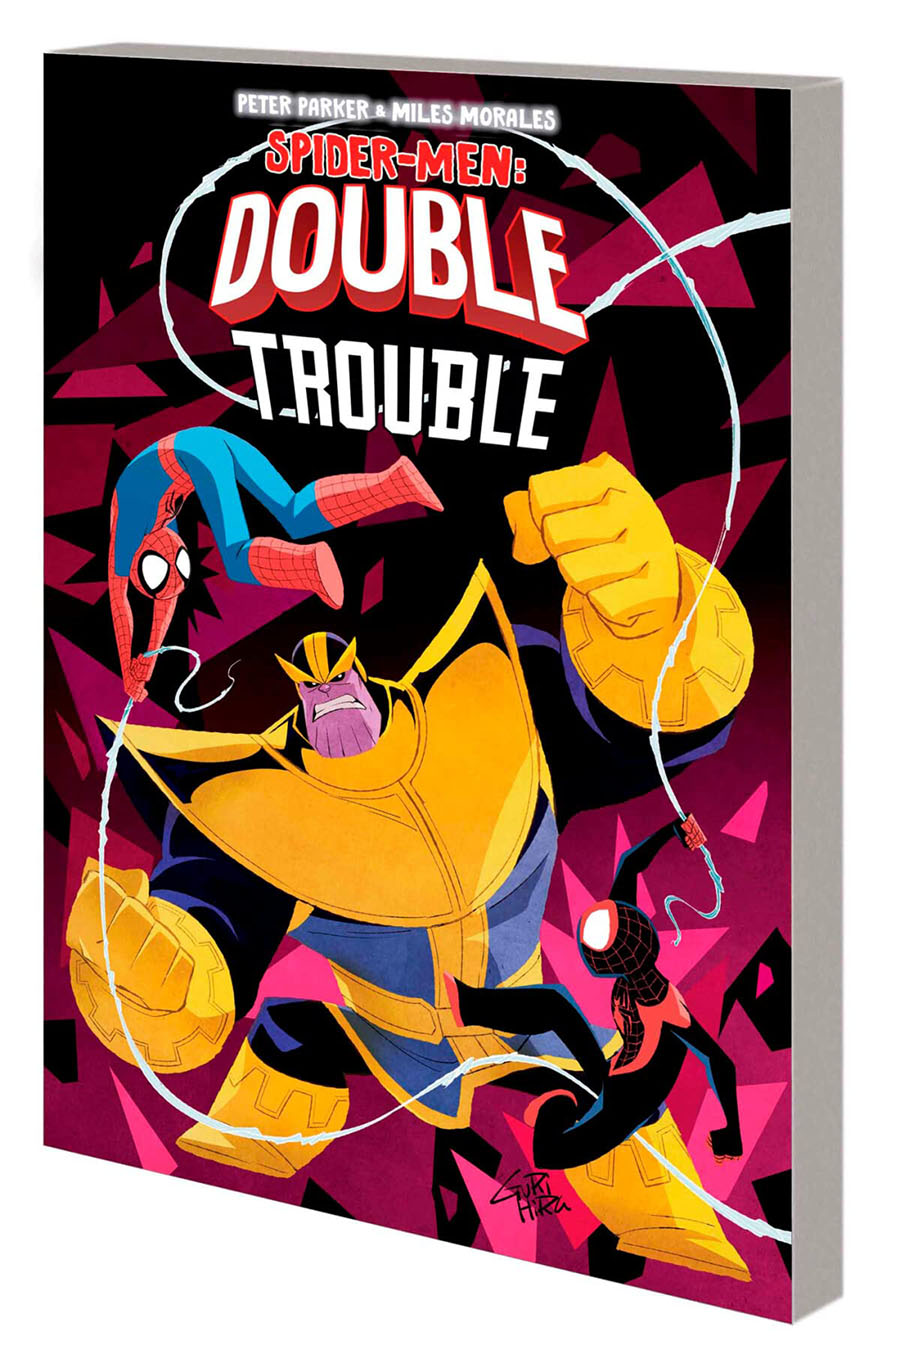 Peter Parker & Miles Morales Spider-Men Double Trouble TP